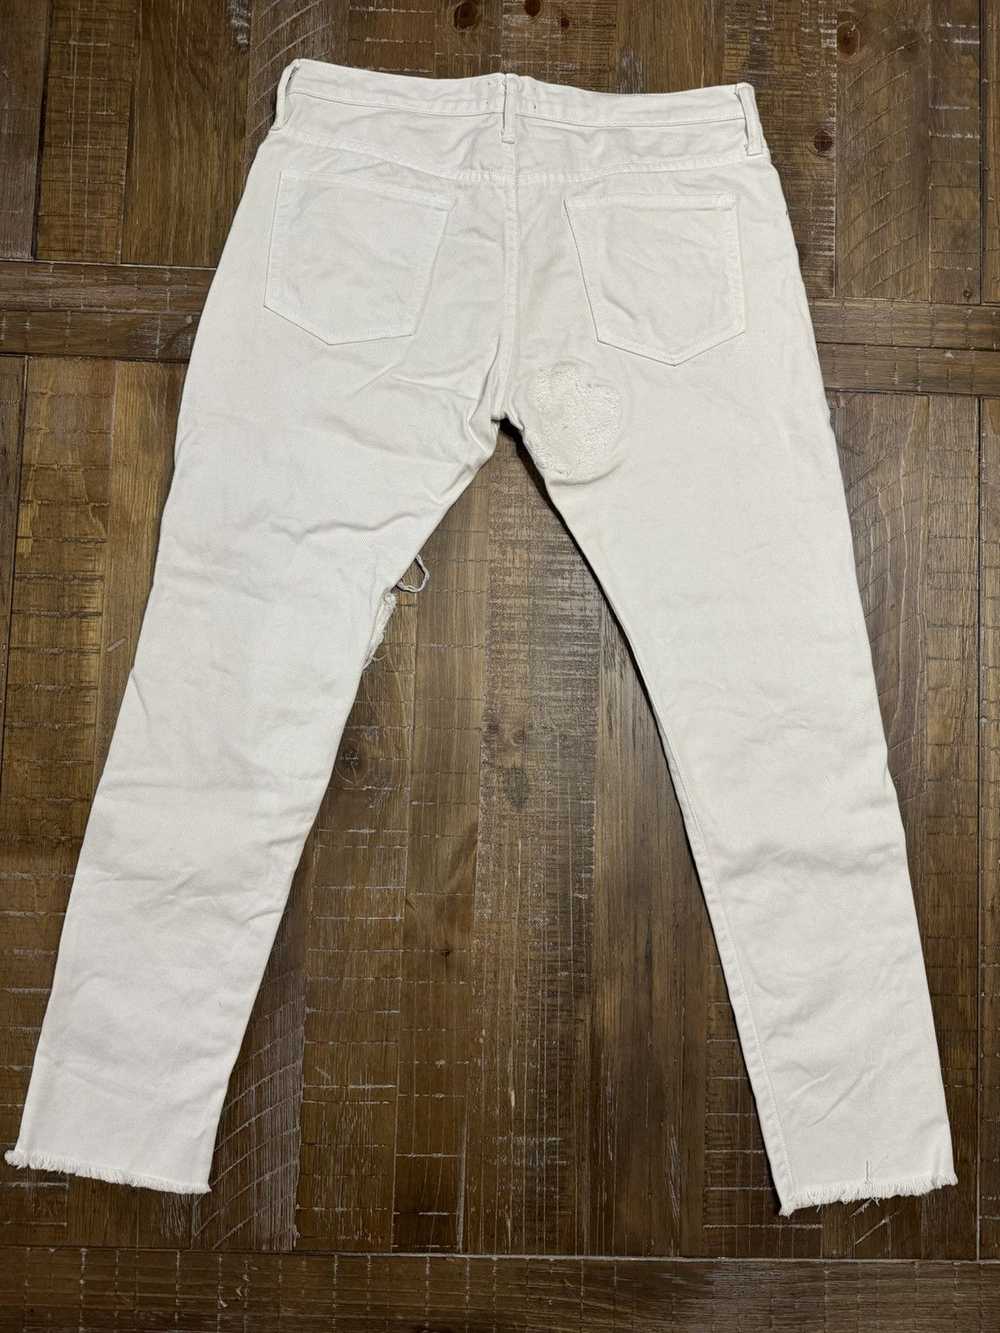 424 On Fairfax 424 on Fairfax Bandana Skinny Jeans - image 2